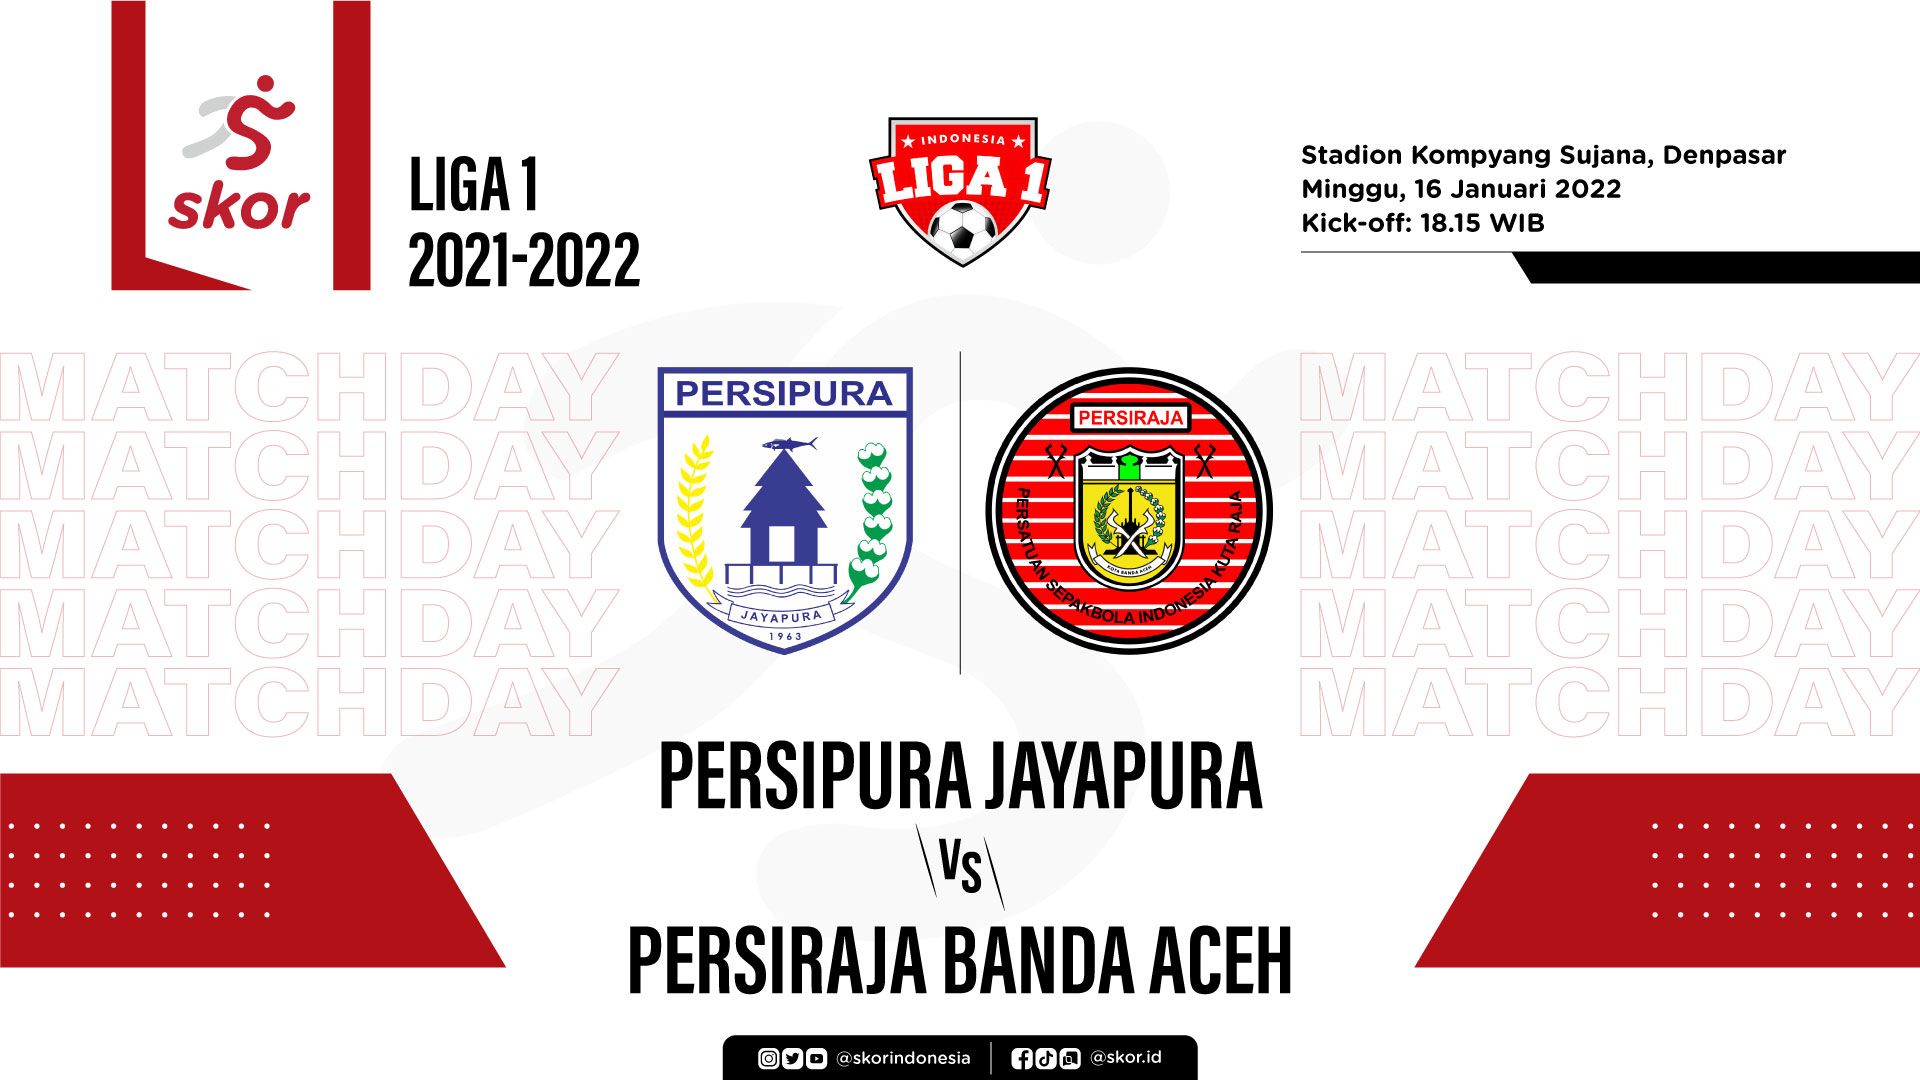 Persipura Jayapura vs Persiraja Banda Aceh